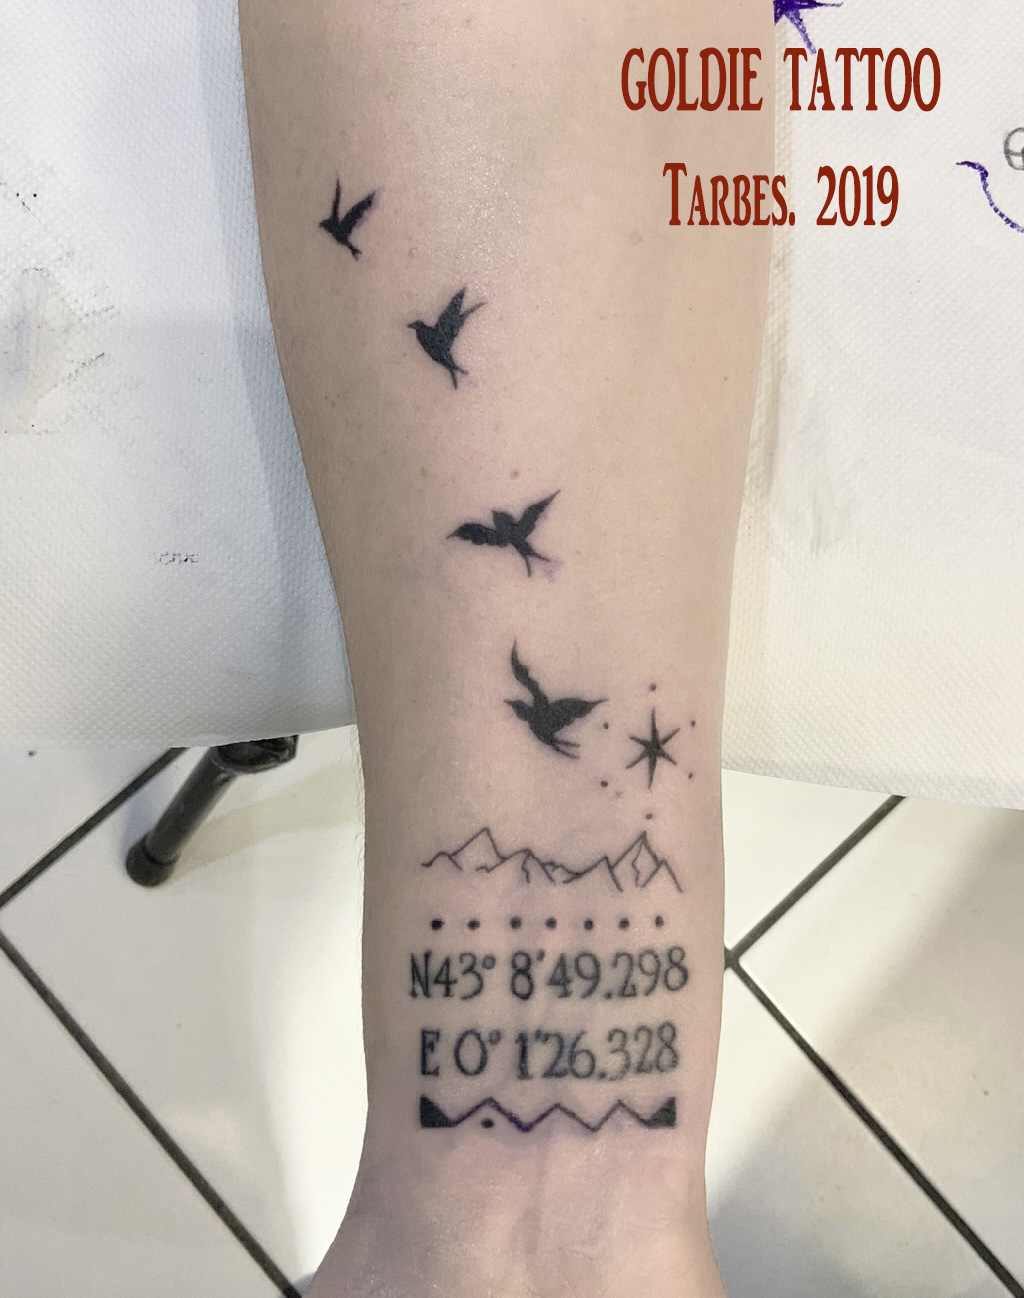 IMG_03goldie tattoo tarbes.2019.pyrenees envol oiseaux.jpg